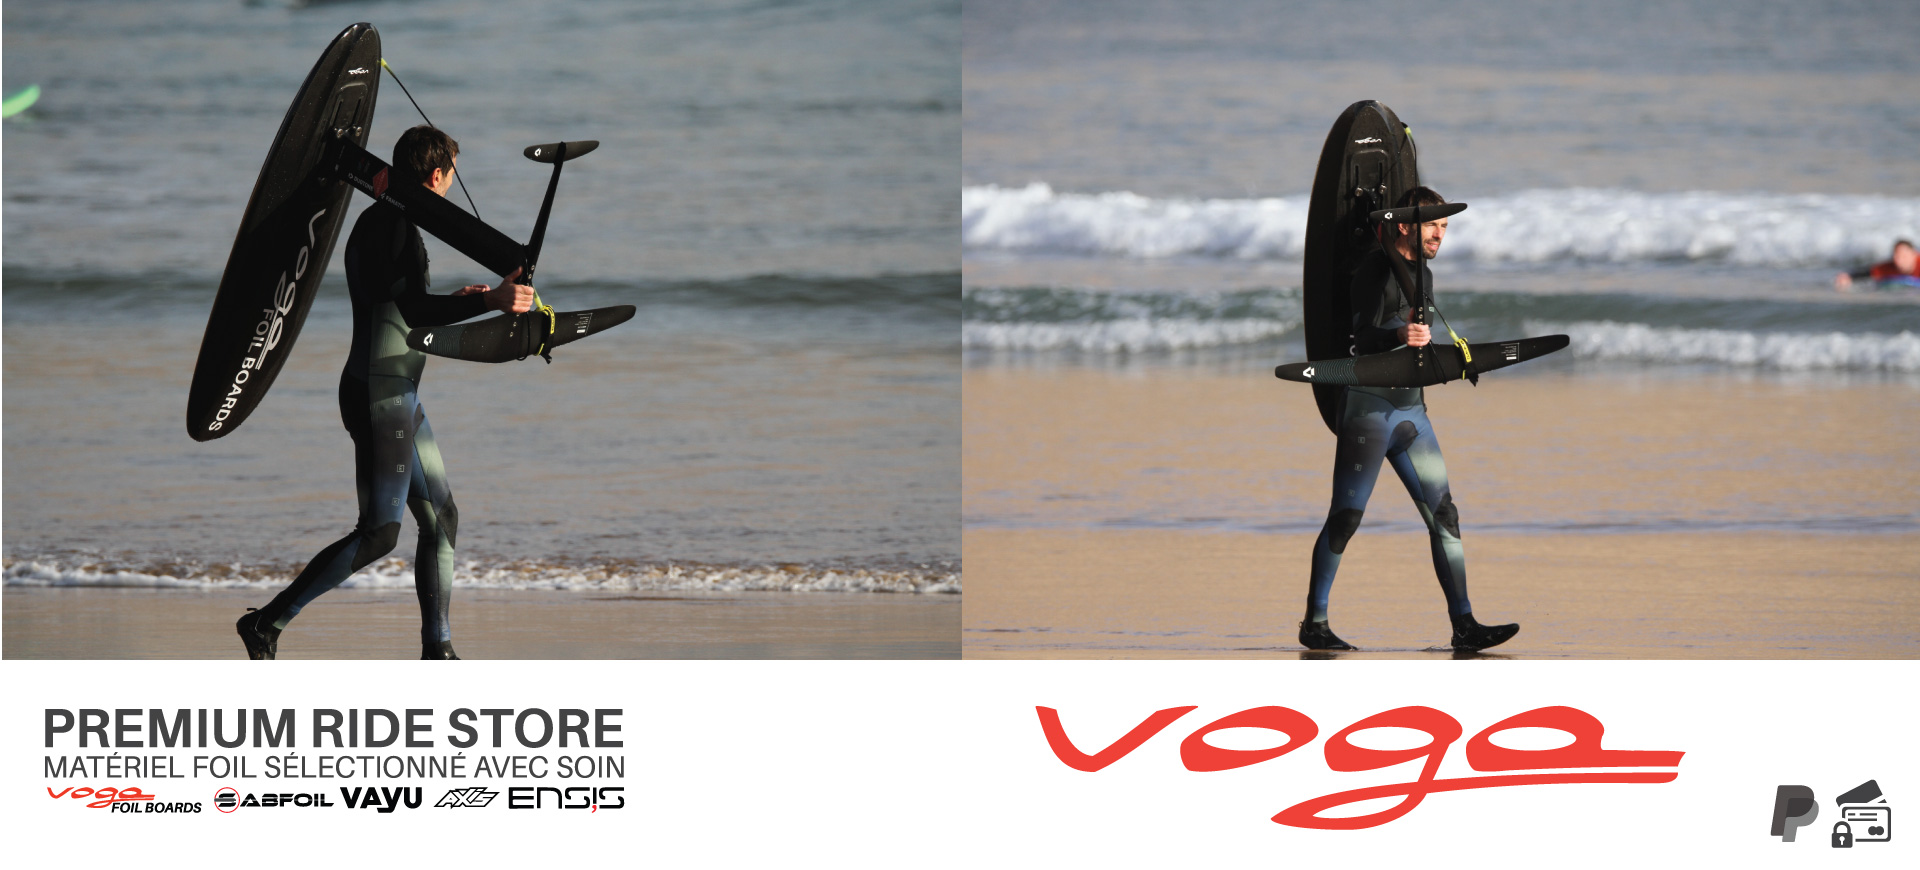 Voga Premium Ride Store planches de surf foil